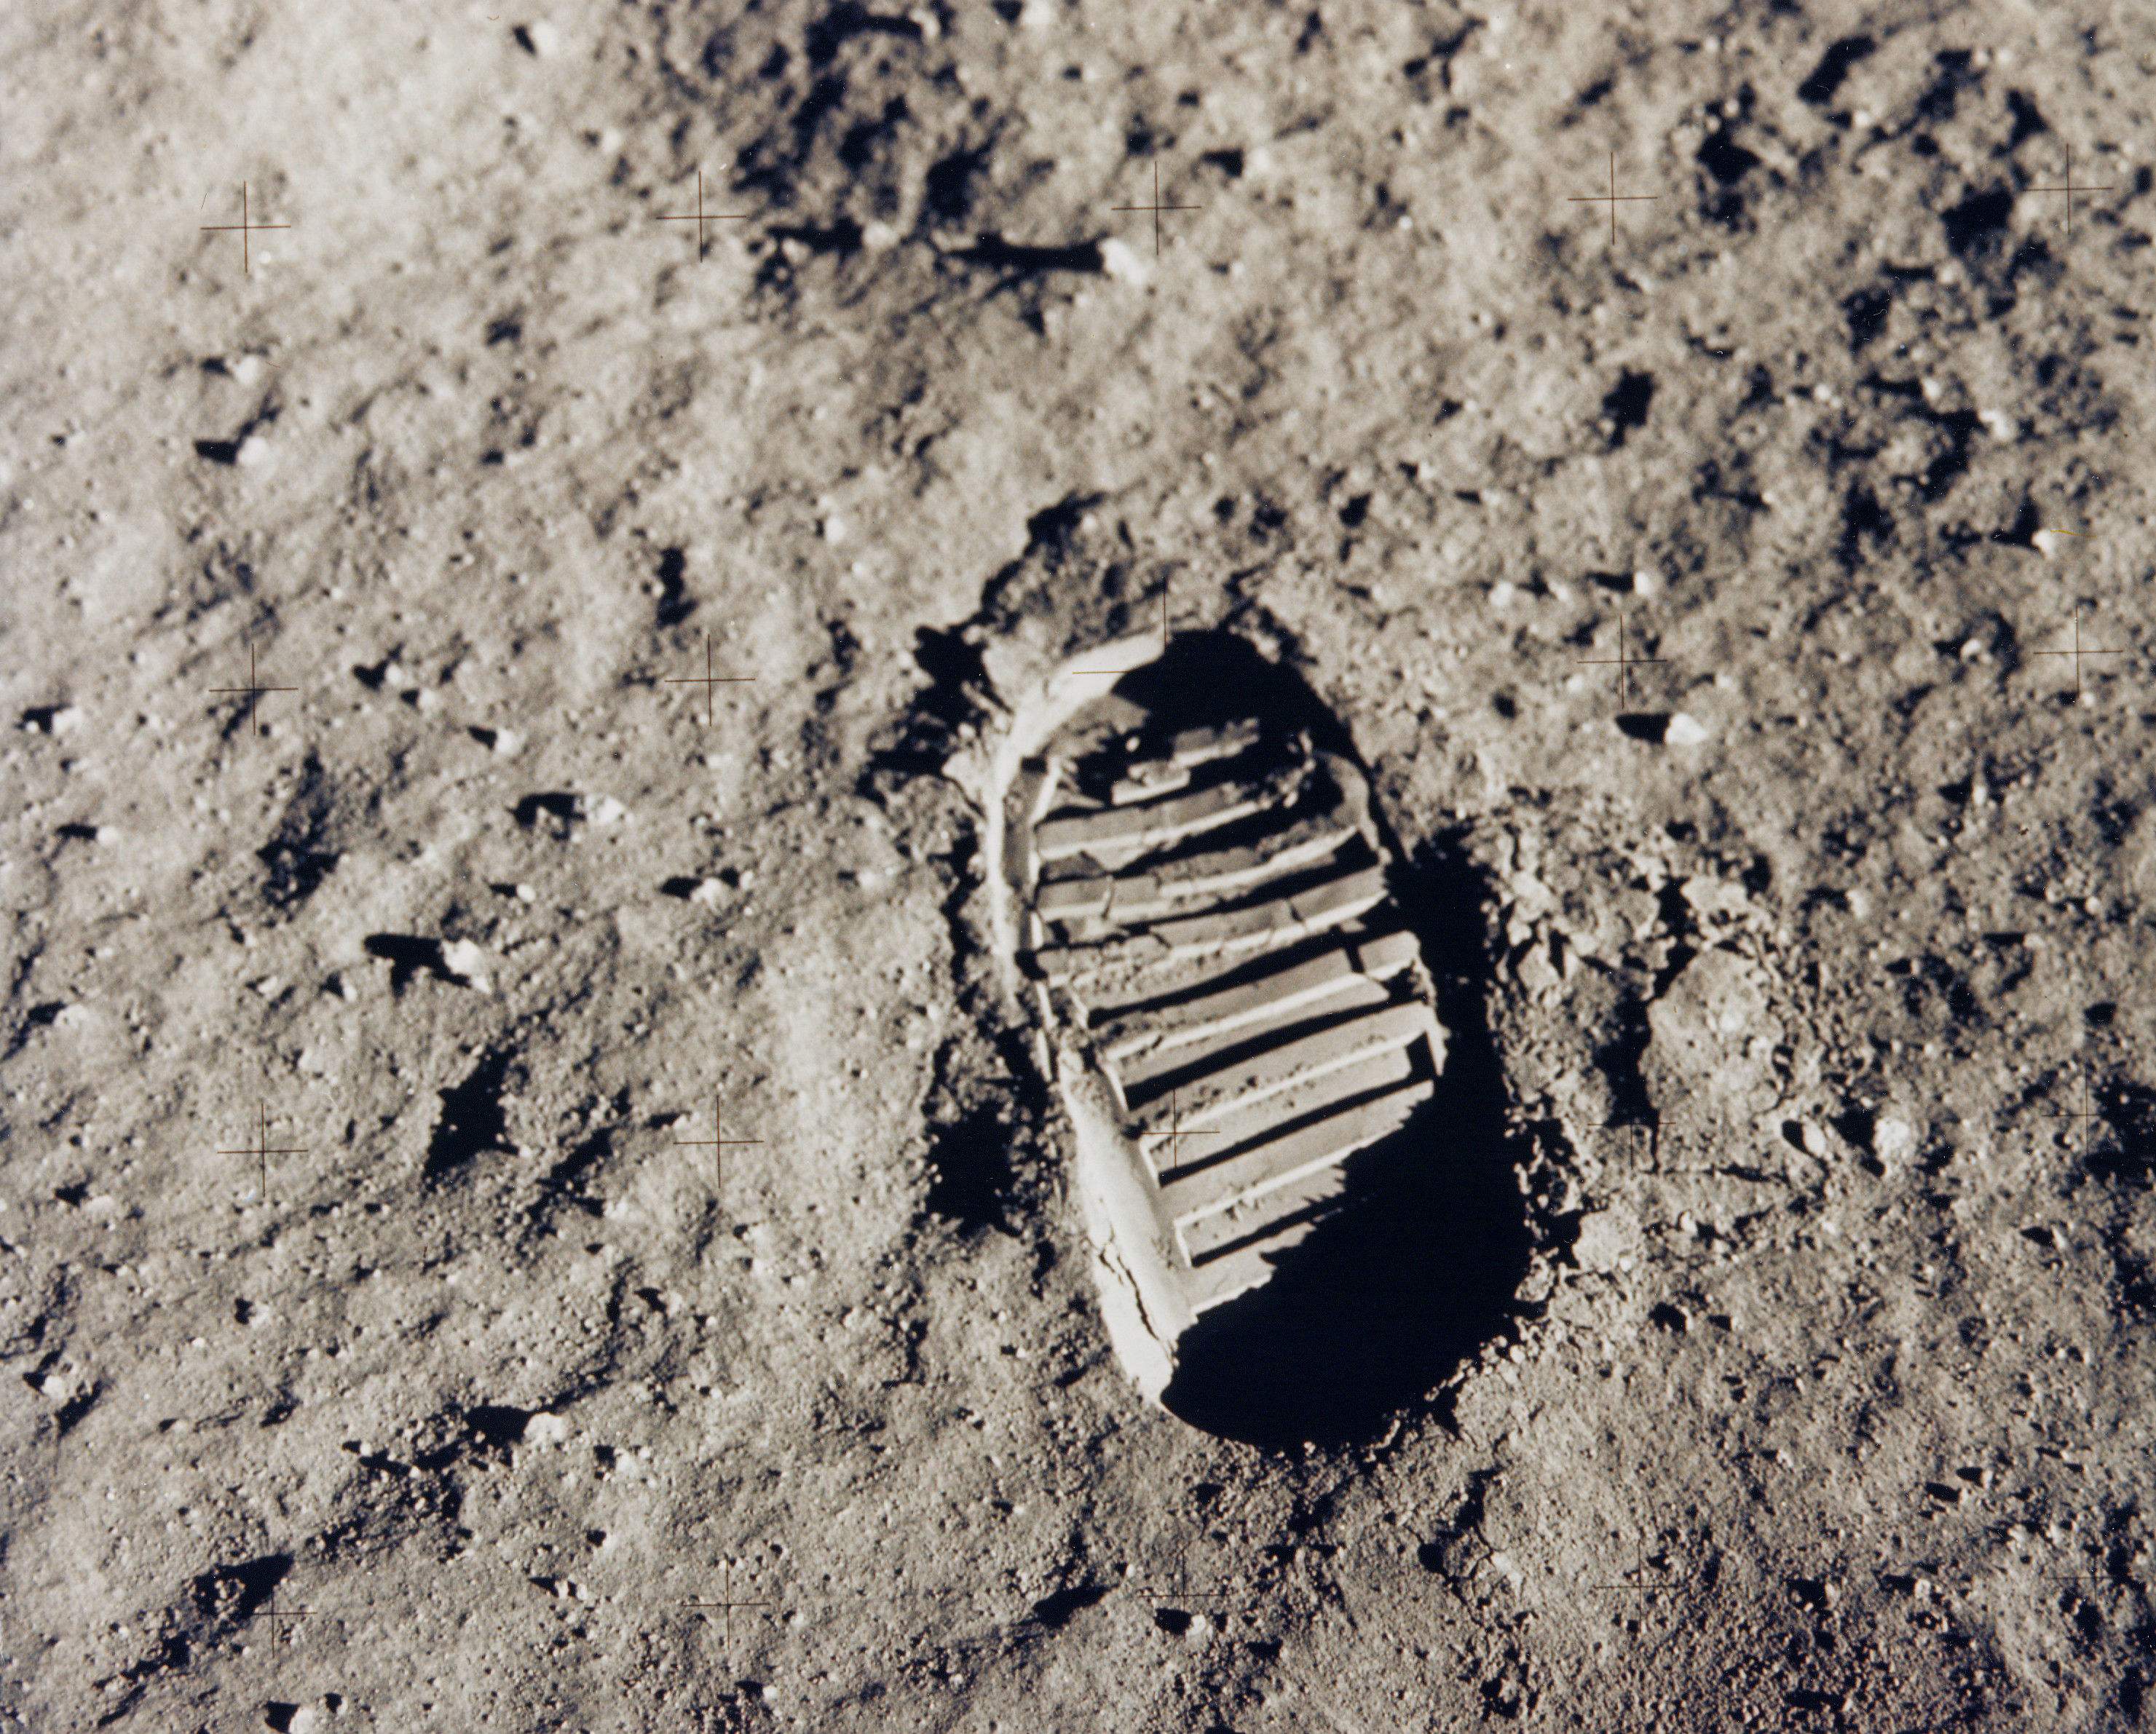 在月球上留下的脚印,过了几十年也没有消失?又长知识了